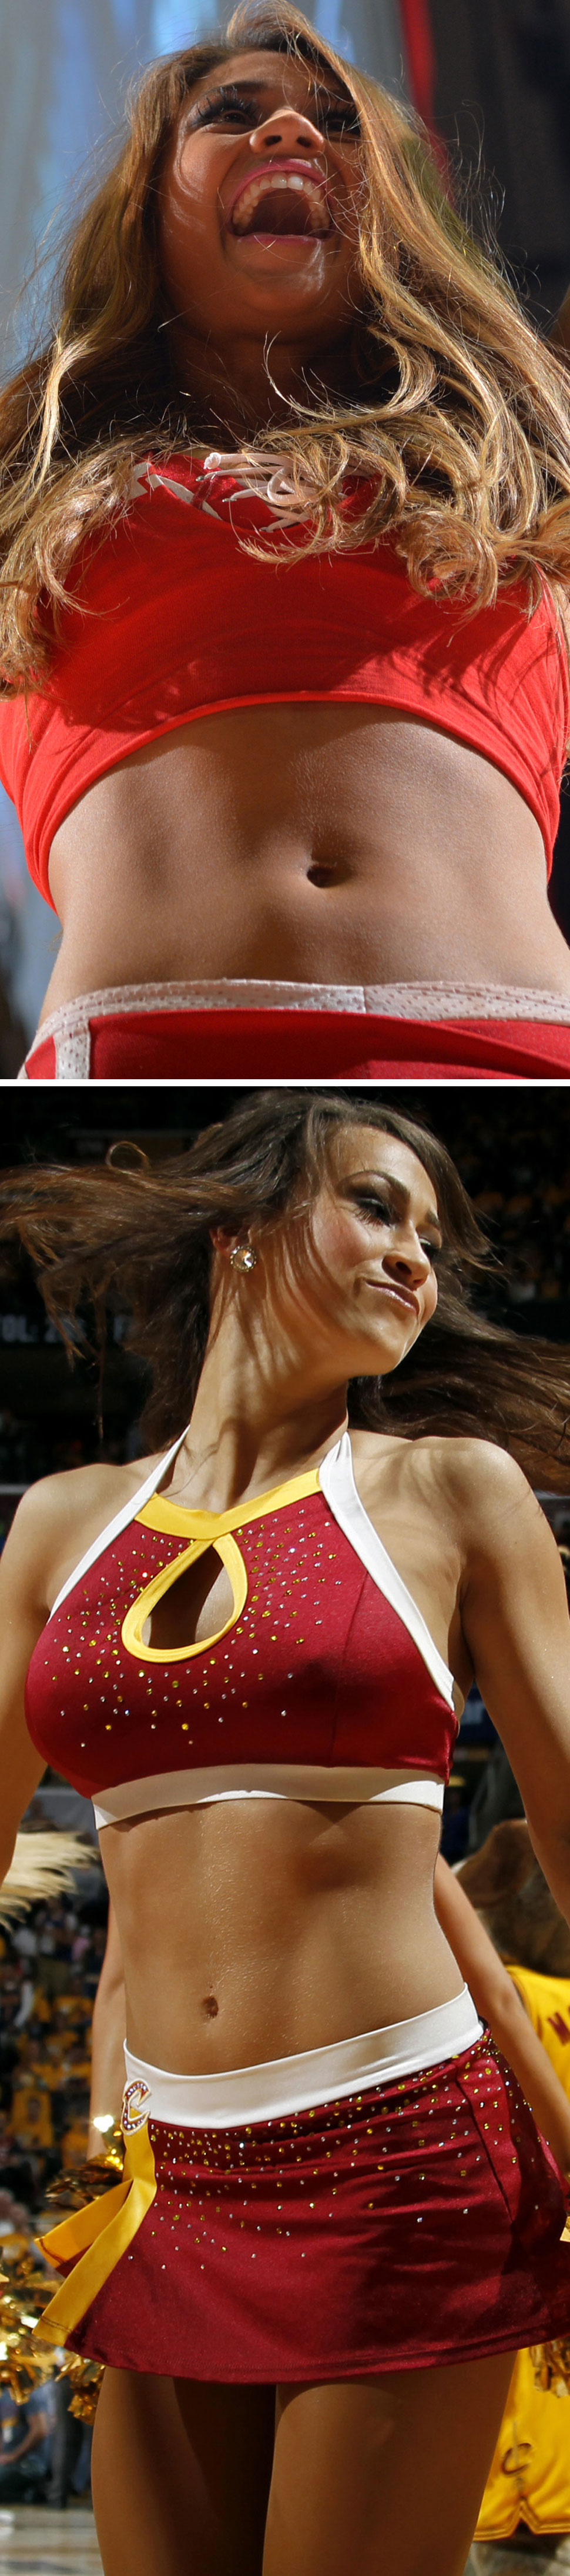 Zoom extremo a las cheerleaders ms sexys de la jornada NBA